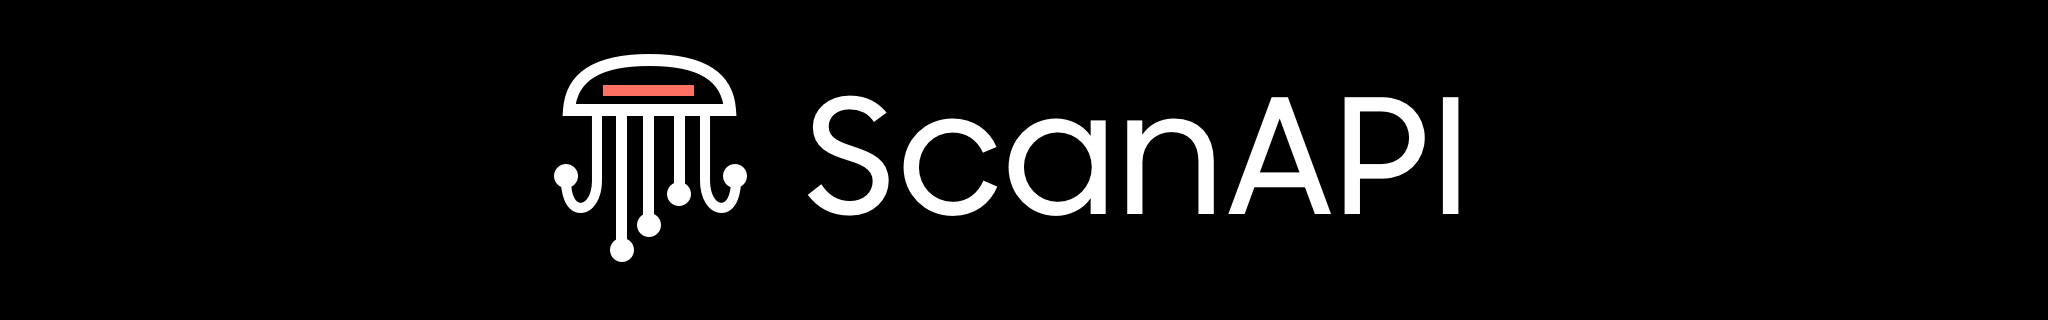 ScanAPI Header